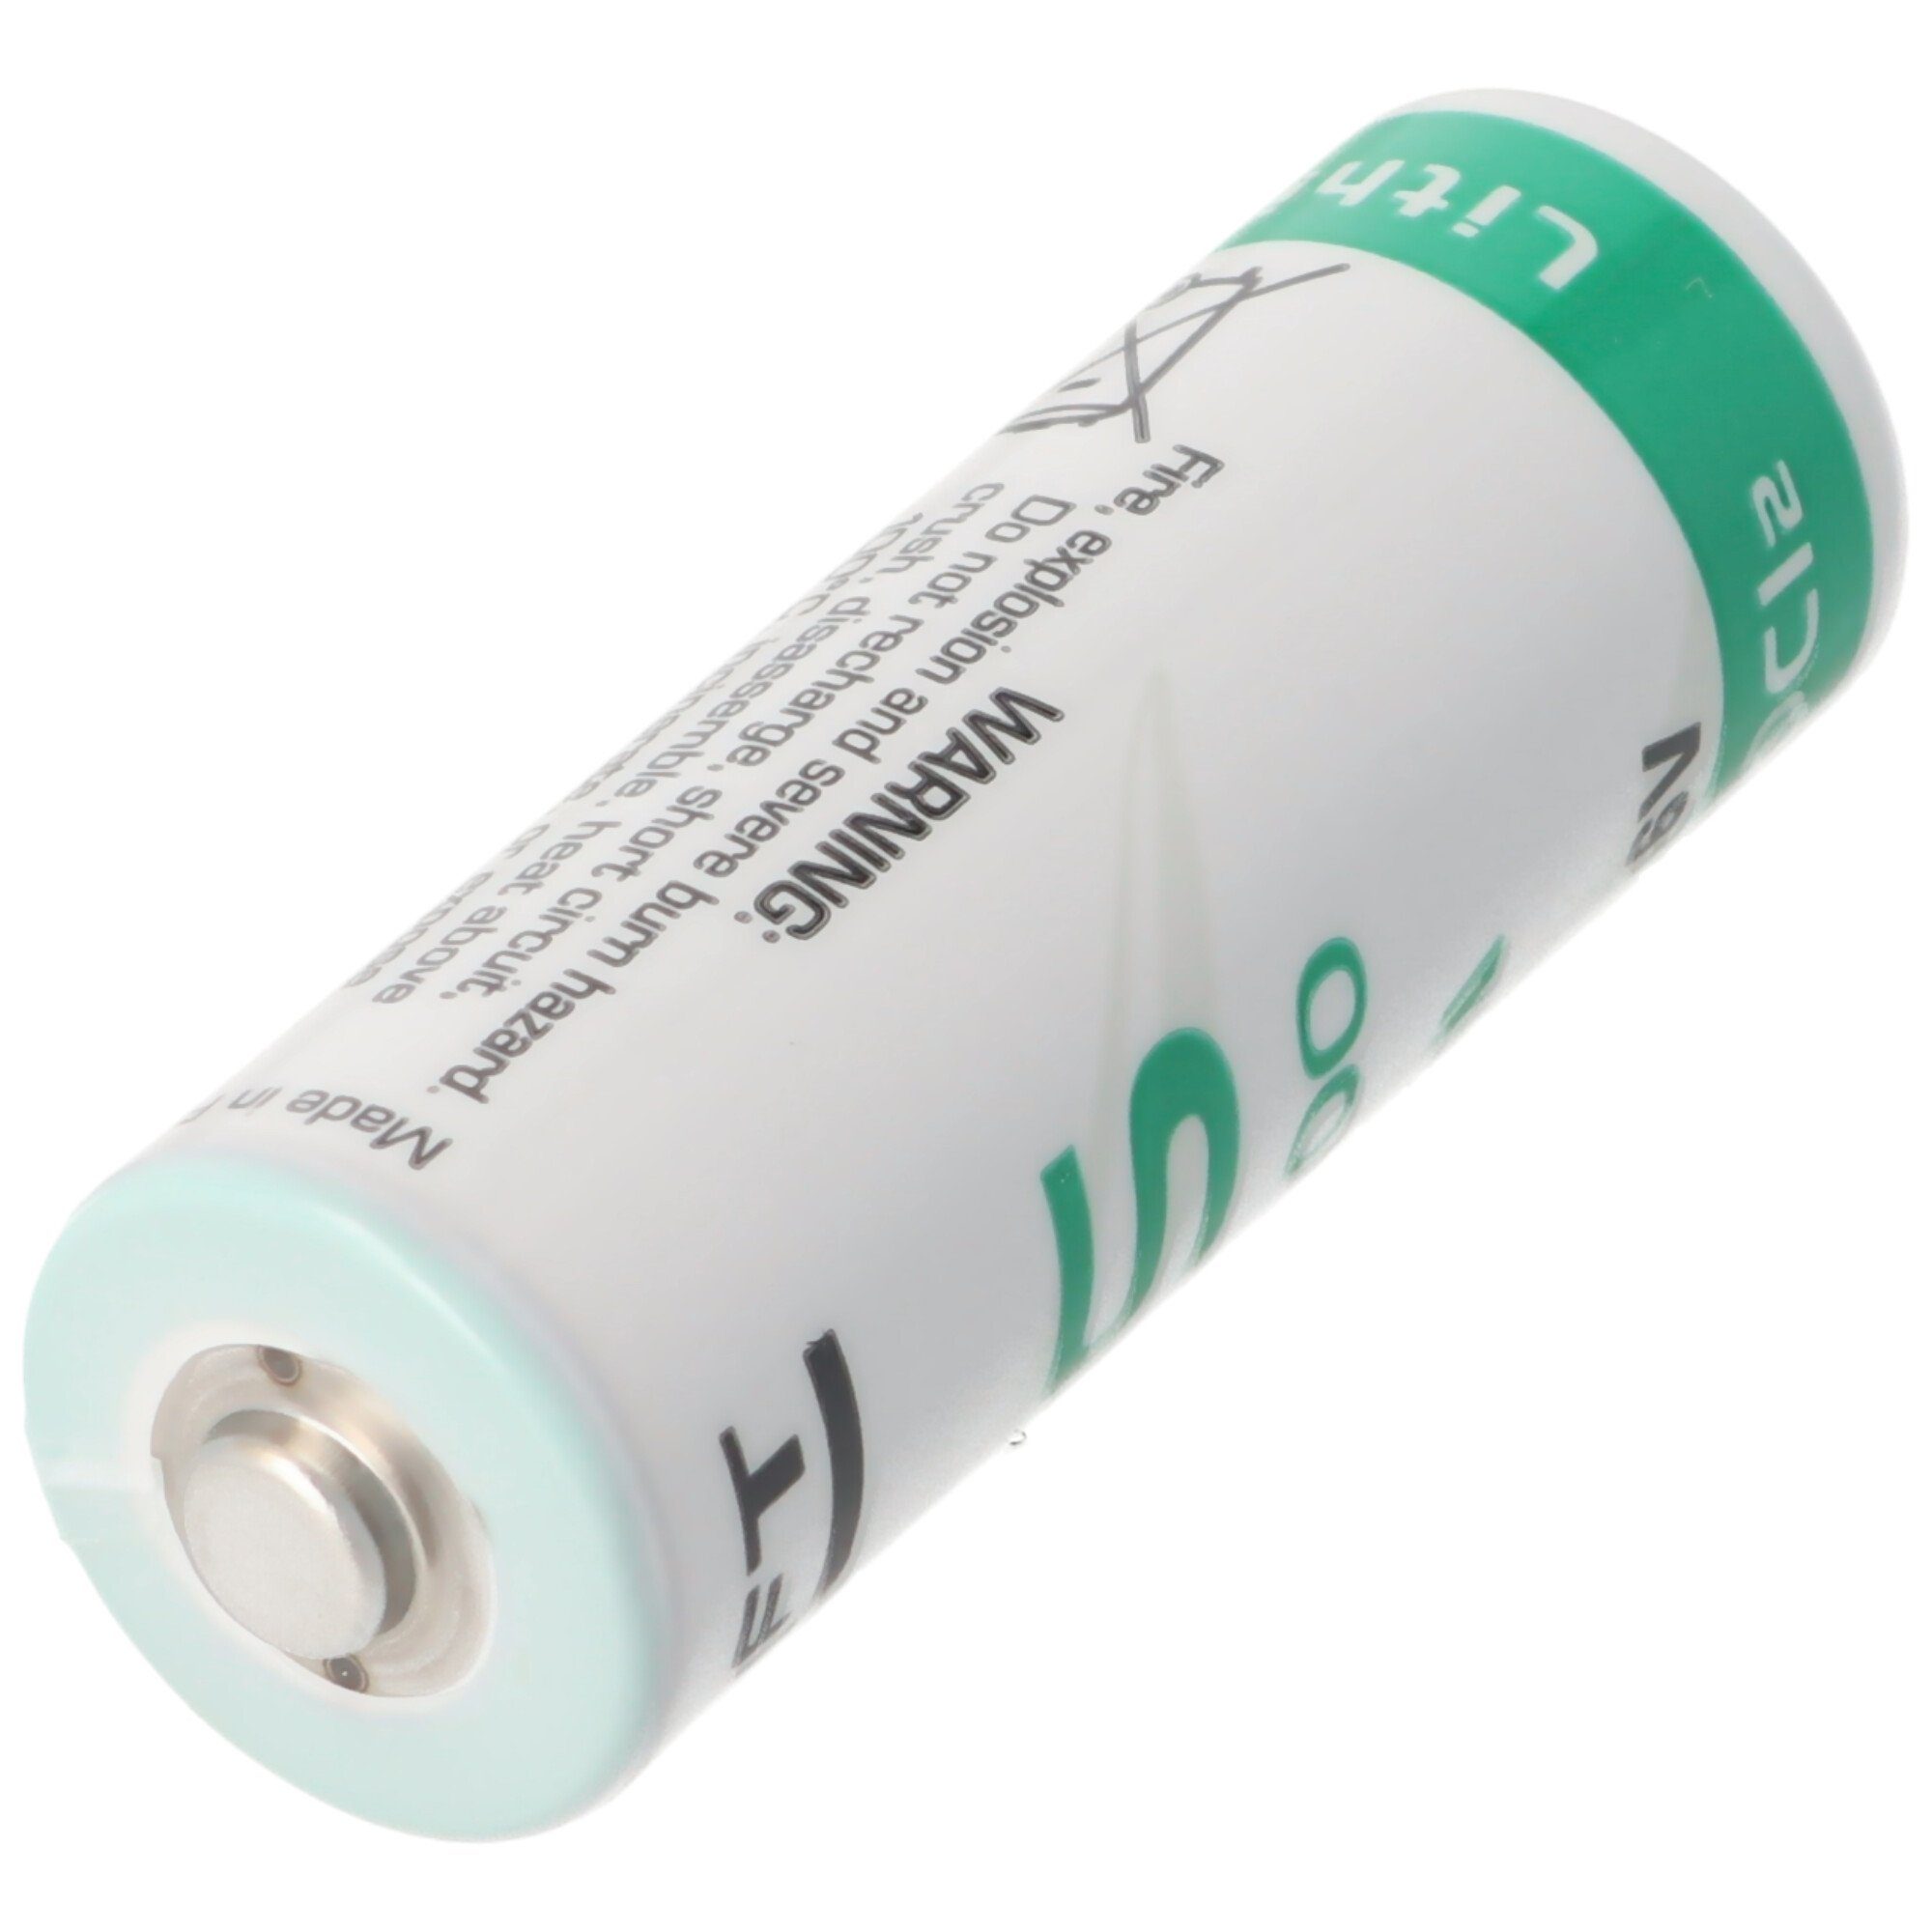 Saft SAFT LS17500 Lithium (3,6 V) Batterie, Batterie, Size A, Lötfahne ohne